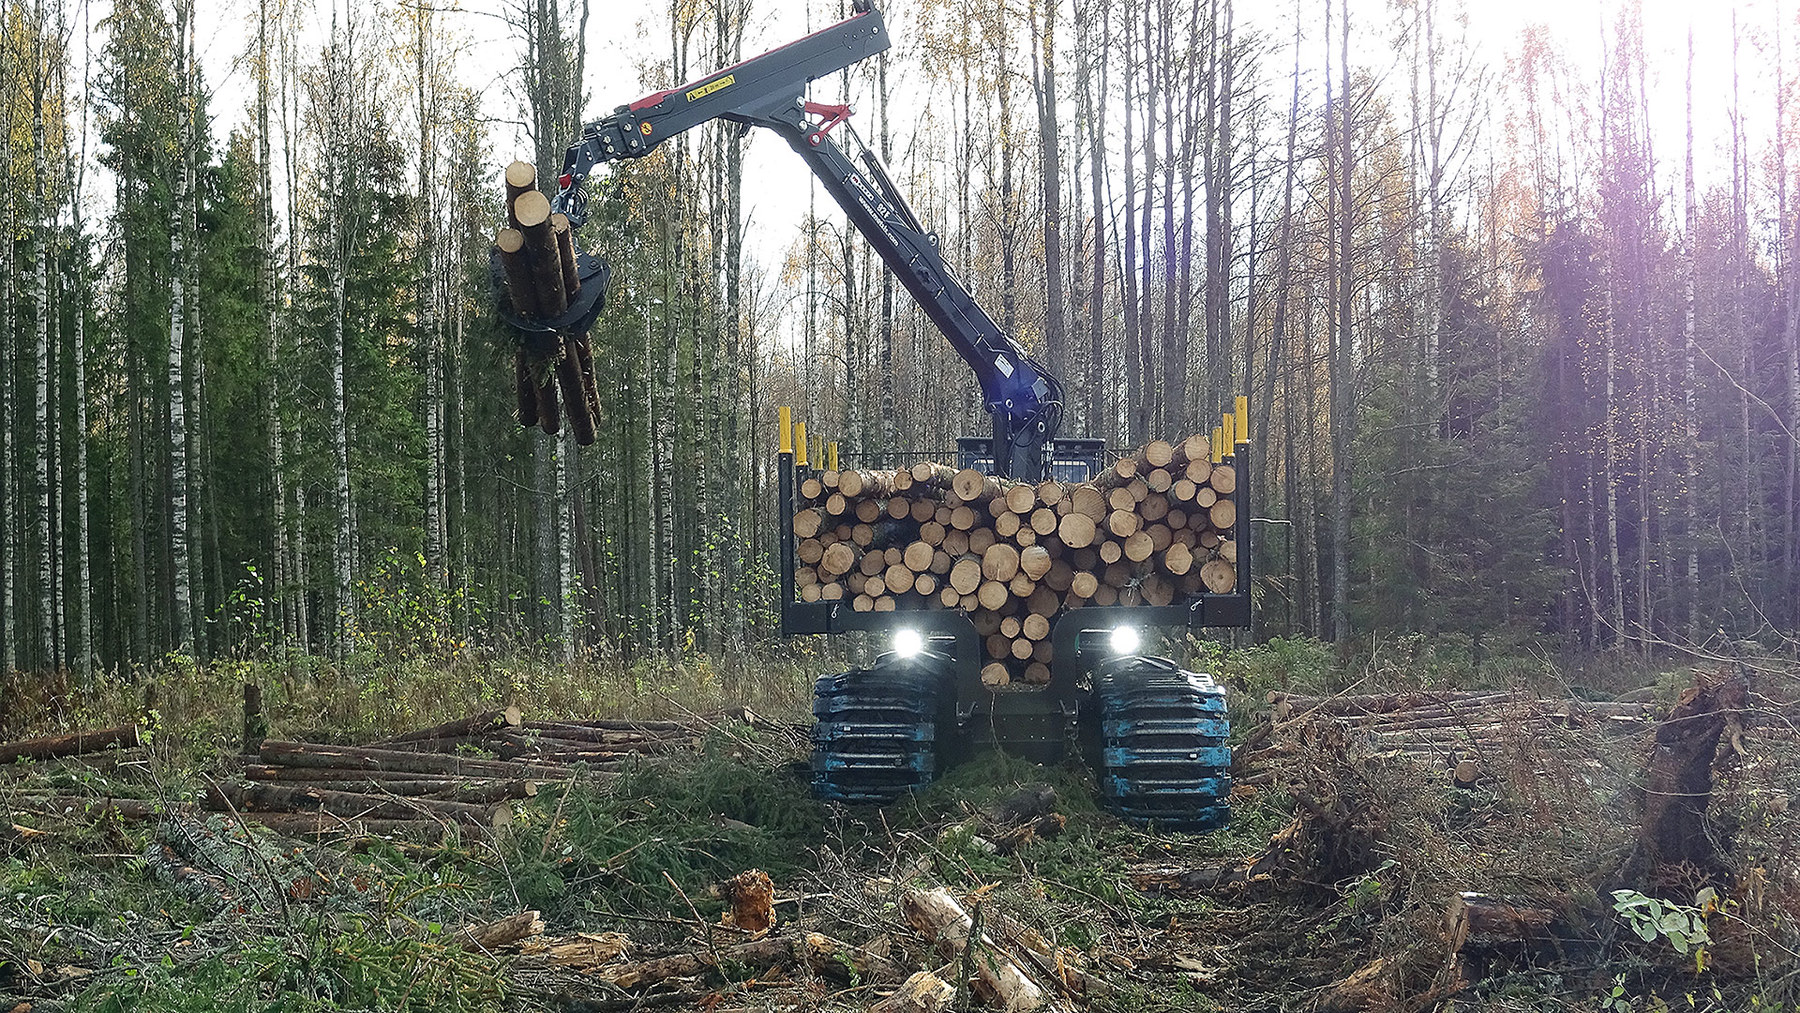 Metsis - maszyny leśne z Estonii